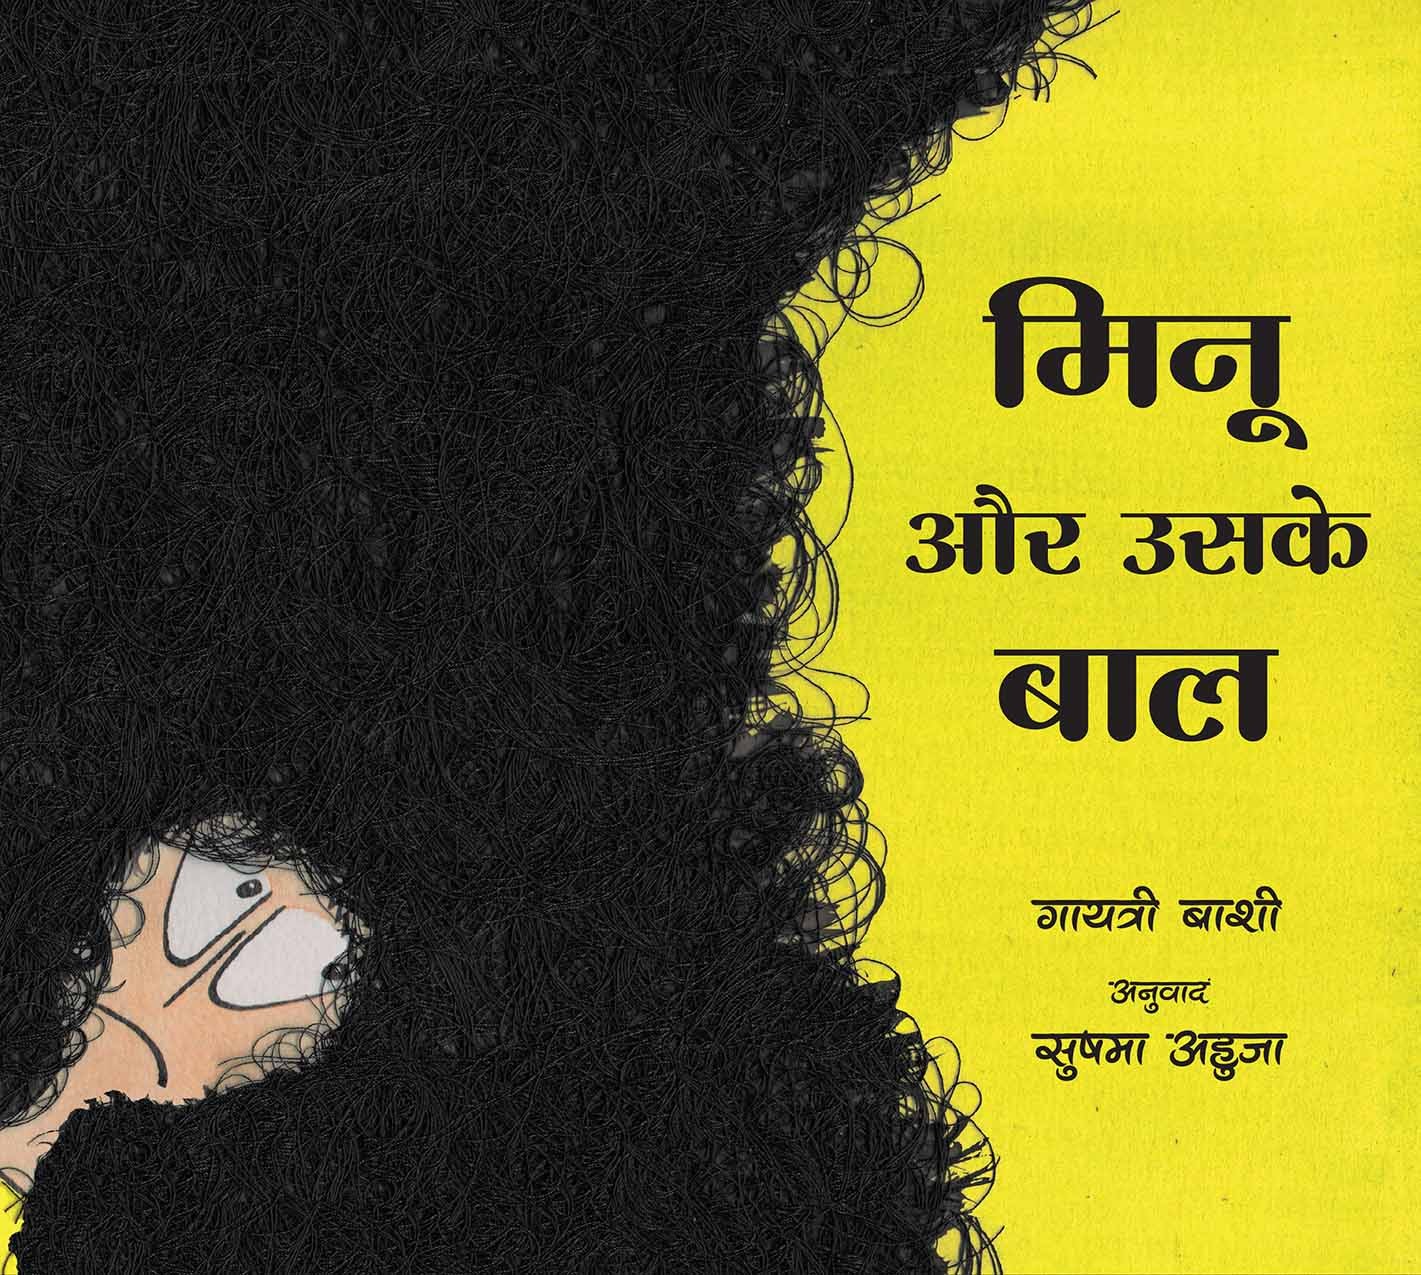 Minu And Her Hair/Minu Aur Uskey Baal (Hindi)